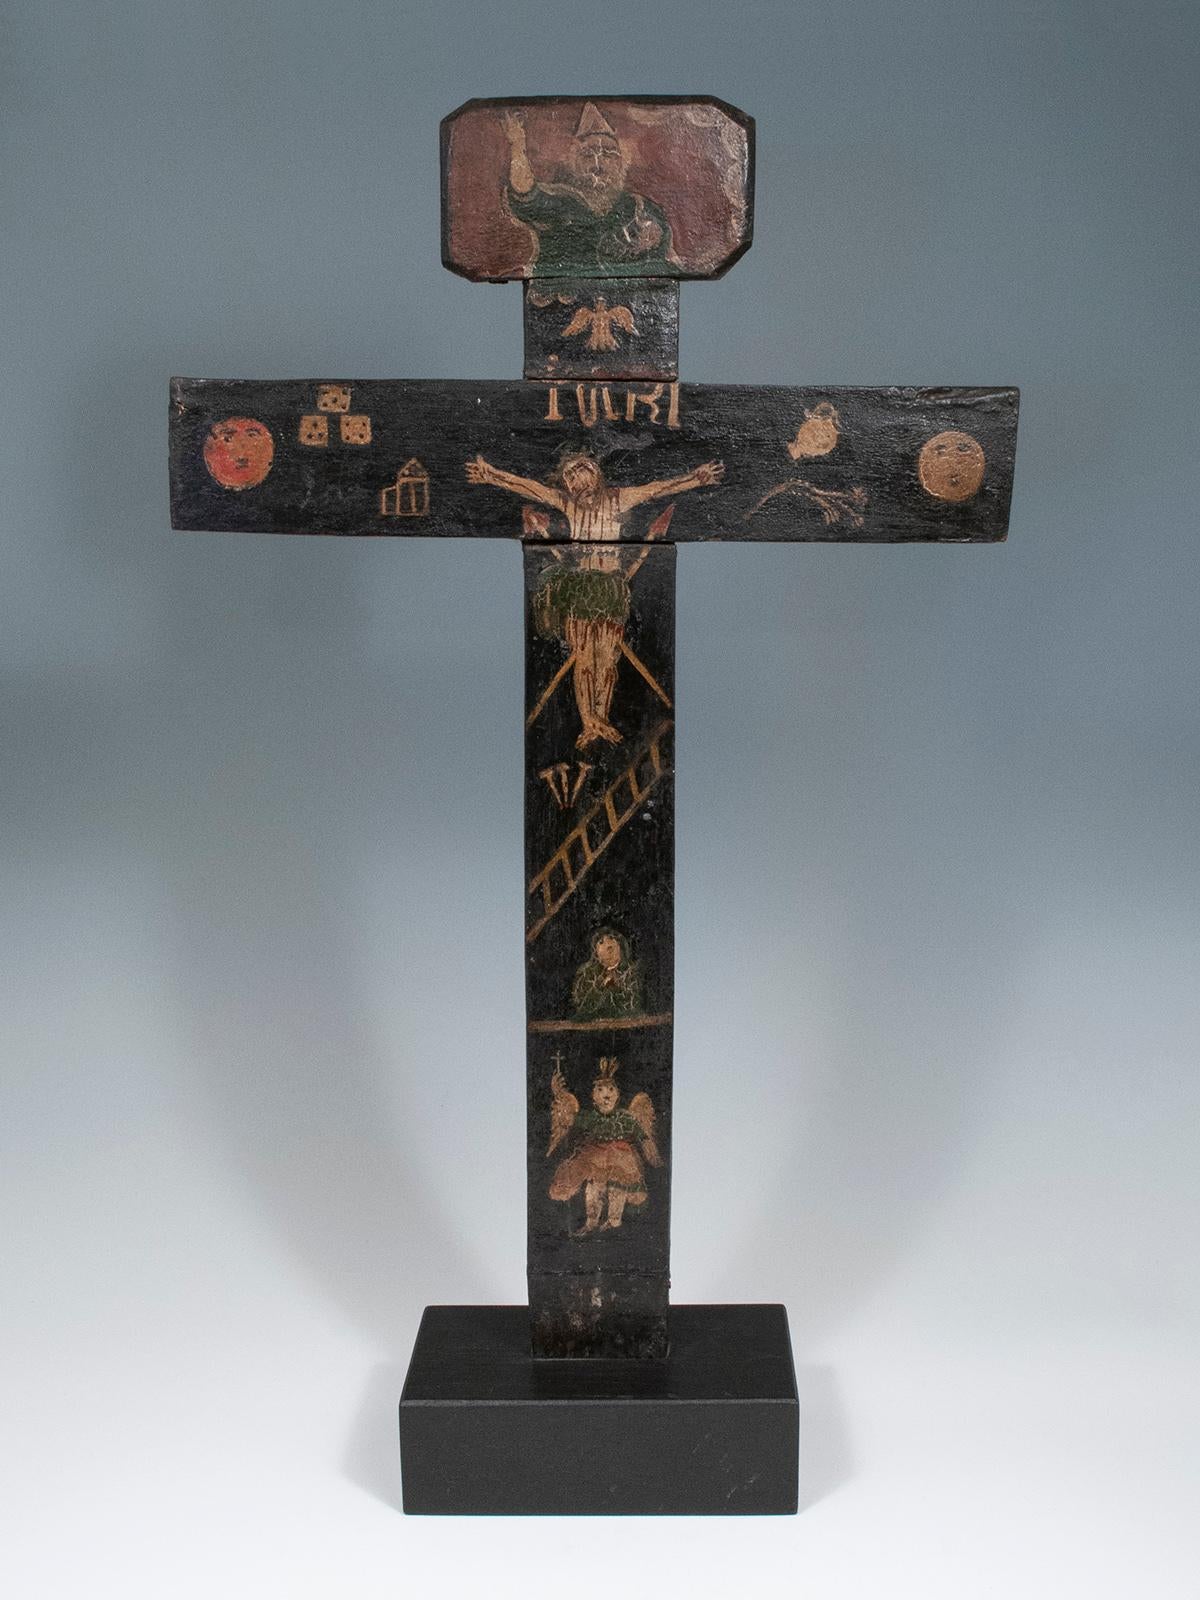 Croix en bois
Guanajuato, Mexique
Bois, peinture
22 x 13 pouces, (56 cm x 33 cm)
18ème siècle

Une magnifique croix en bois ancienne avec une représentation peinte du Christ crucifié, un ange, peut-être Marie-Madeleine, Dieu et le